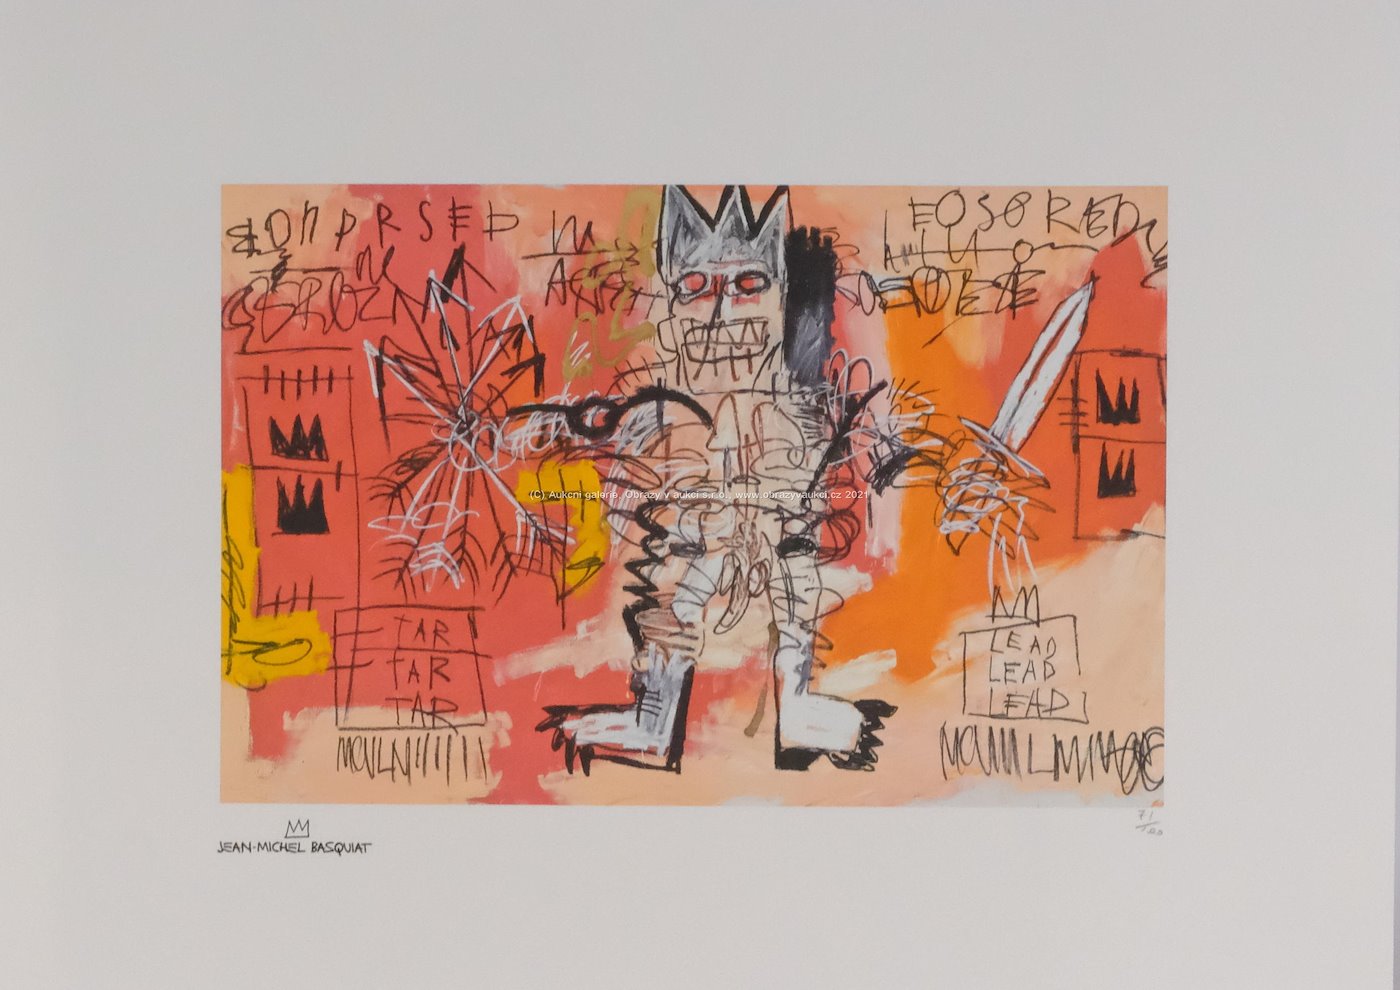 Jean-Michel Basquiat - Untitled (Tar Tar Tar, Lead Lead Lead)